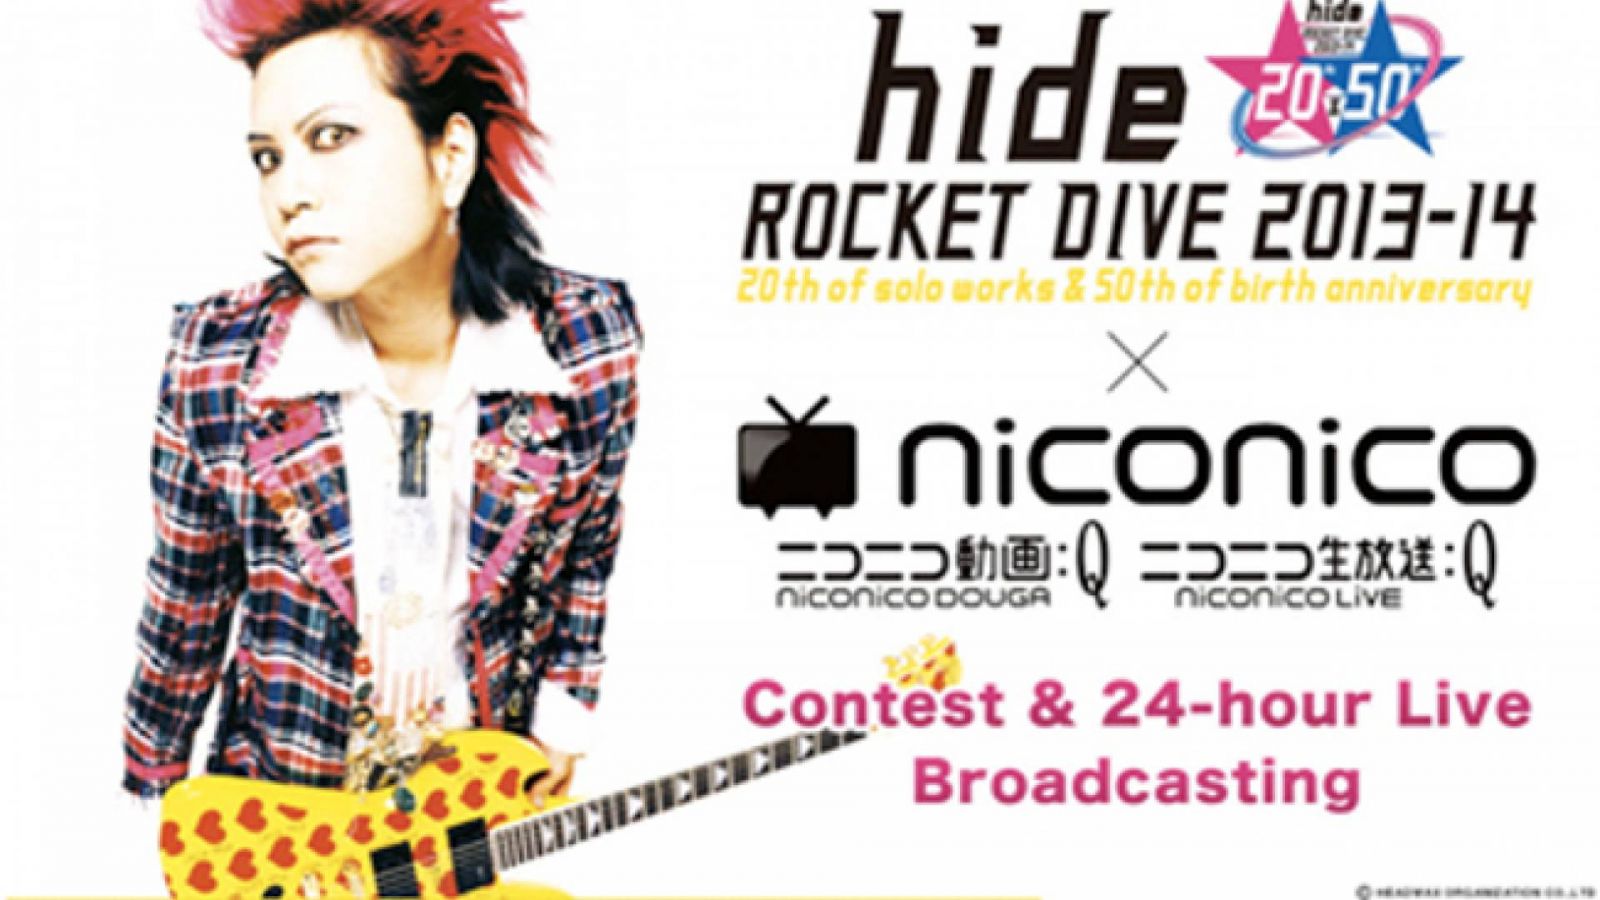 NicoNico fête le vingtième anniversaire de hide © HEADWAX ORGANIZATION